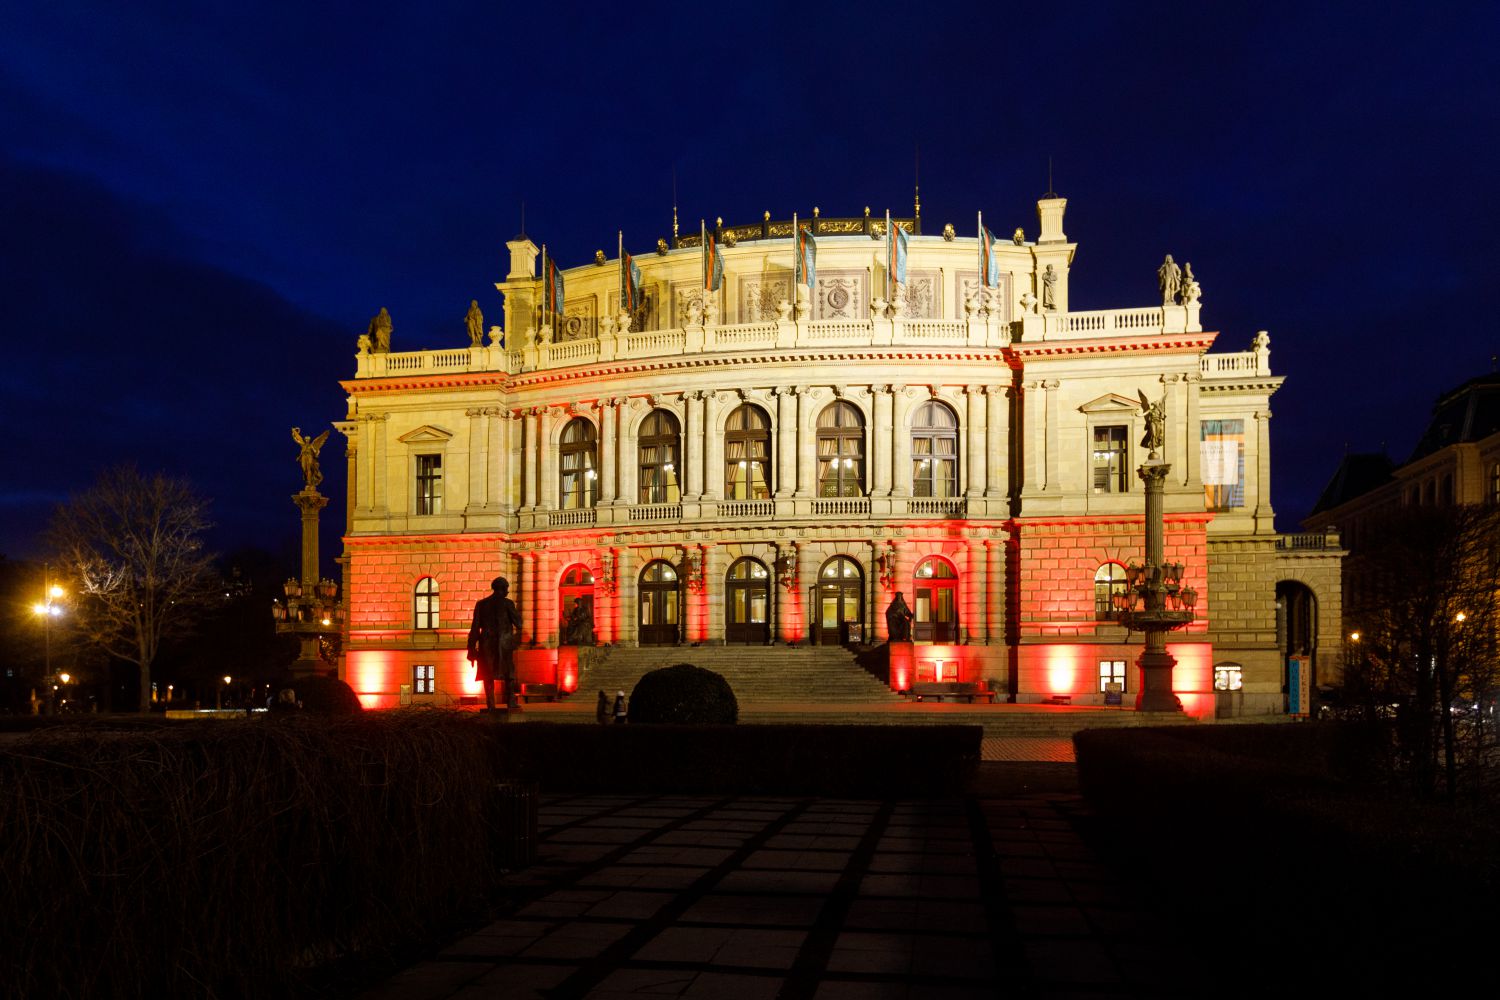 Der prestigeträchtige Konzertsaal in Prag wurde von KV2 mit einer maßgeschneiderten Audiolösung ausgestattet. (Fotos: KV2 Audio)